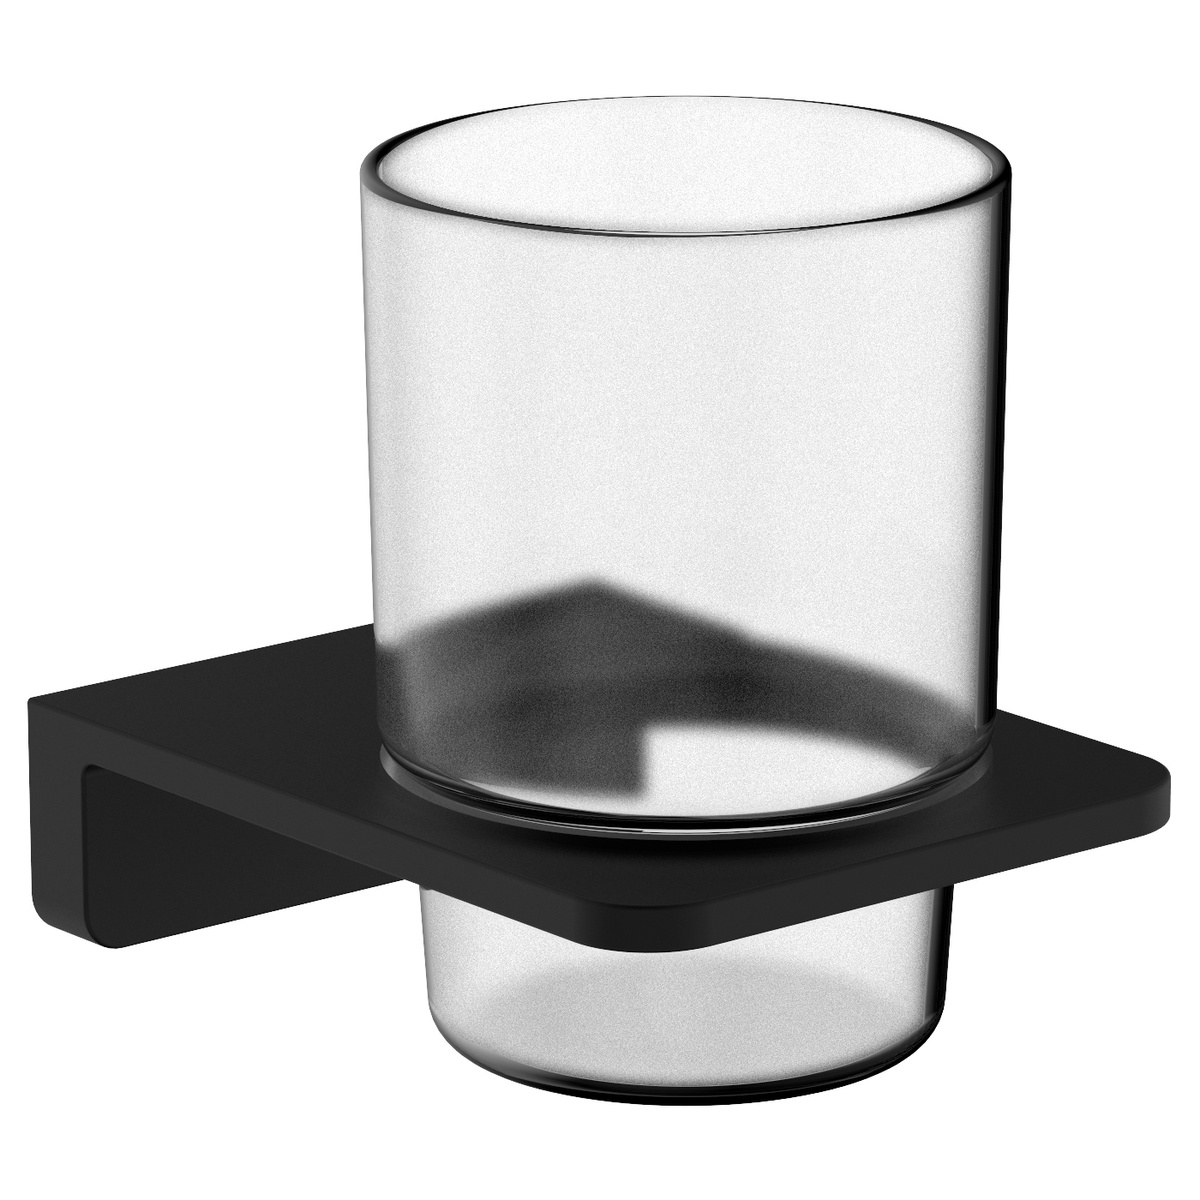 Стакан для зубных щеток подвесной VOLLE DE LA NOCHE черный стекло 10-40-0020-black